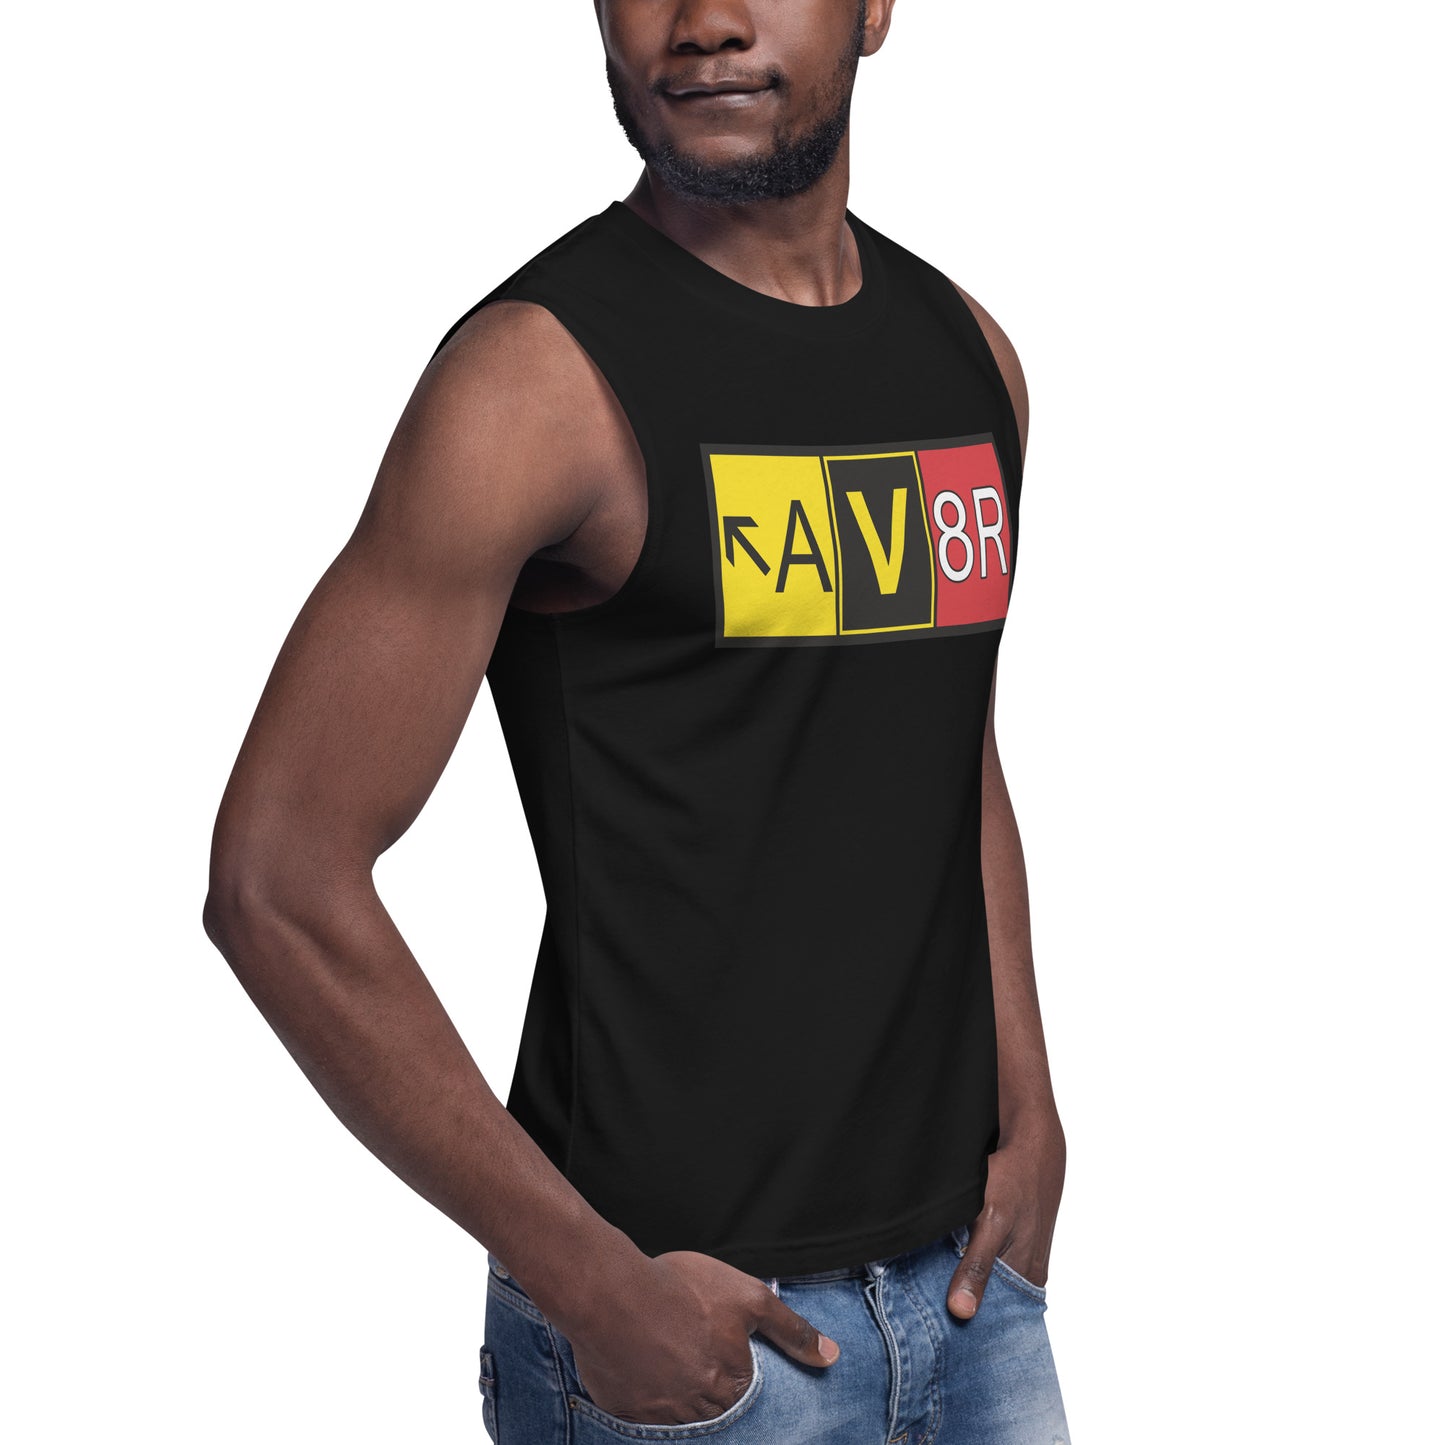 AV8R Muscle Shirt (black)